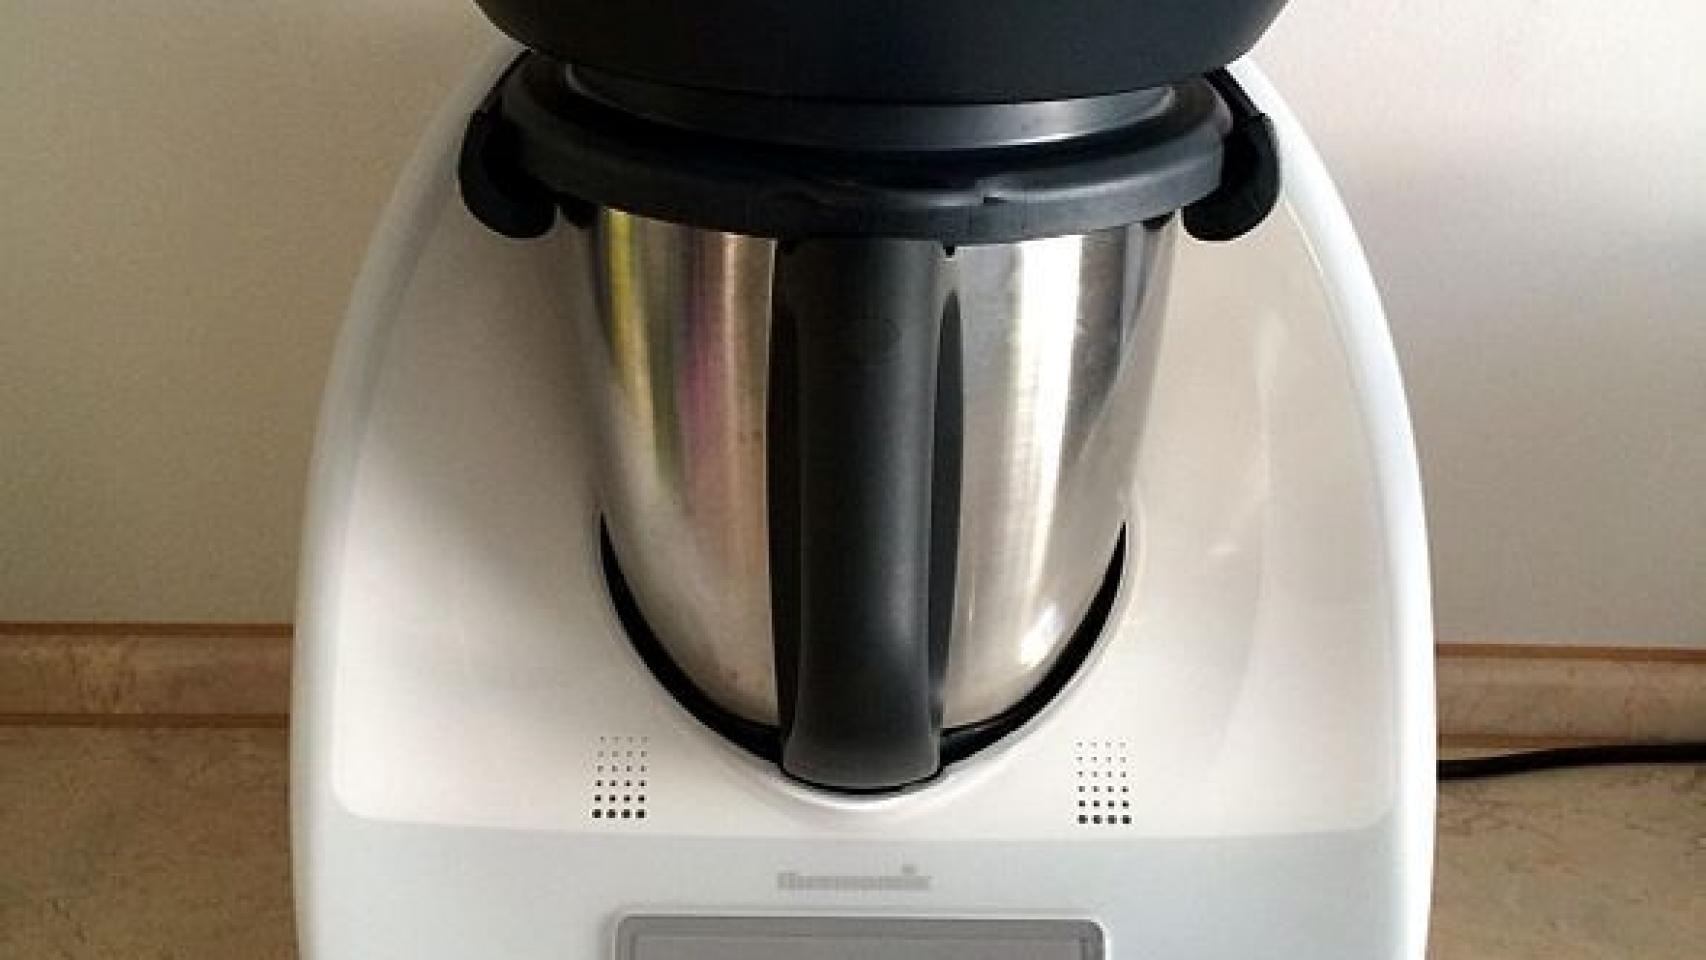 Vuelve a Lidl su famoso robot de cocina